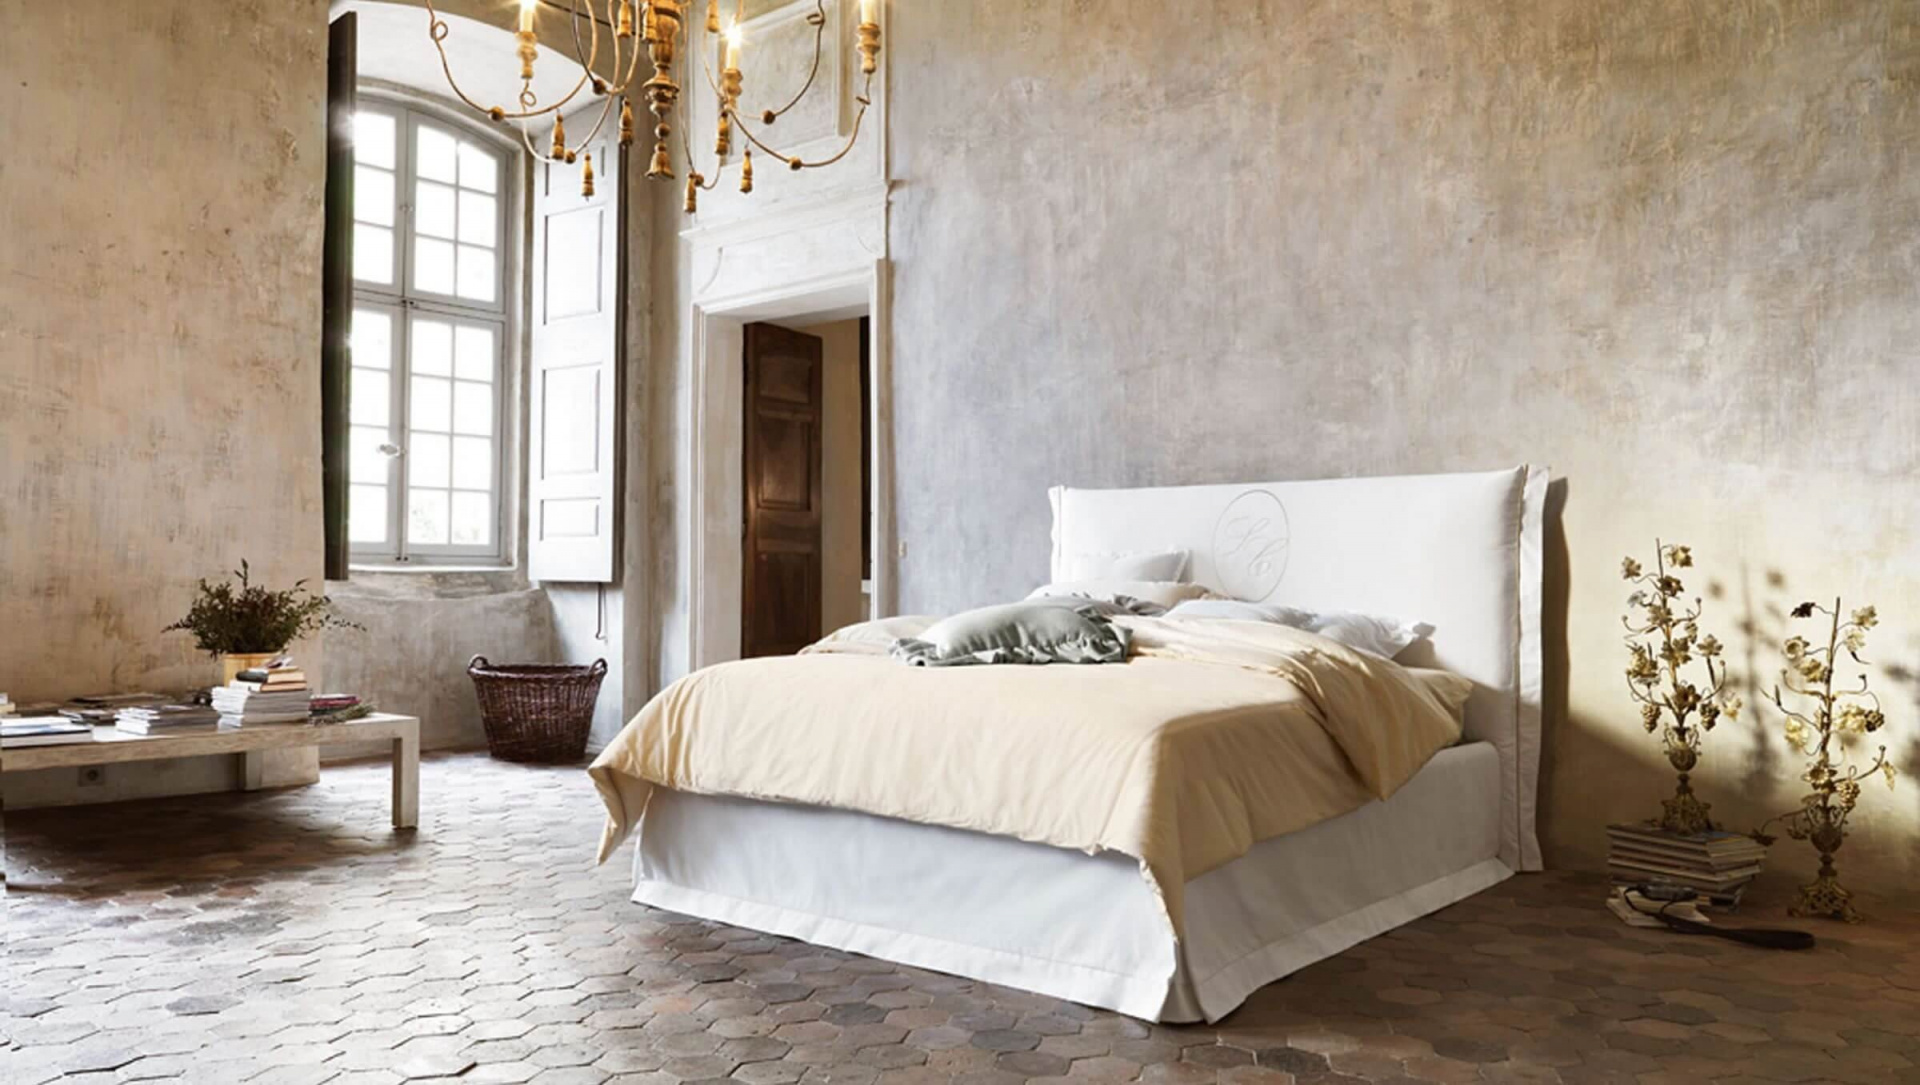 Pohodlná a designově zpracovaná postel je základem luxusní italské ložnice. Zdroj: IDWItalia.com